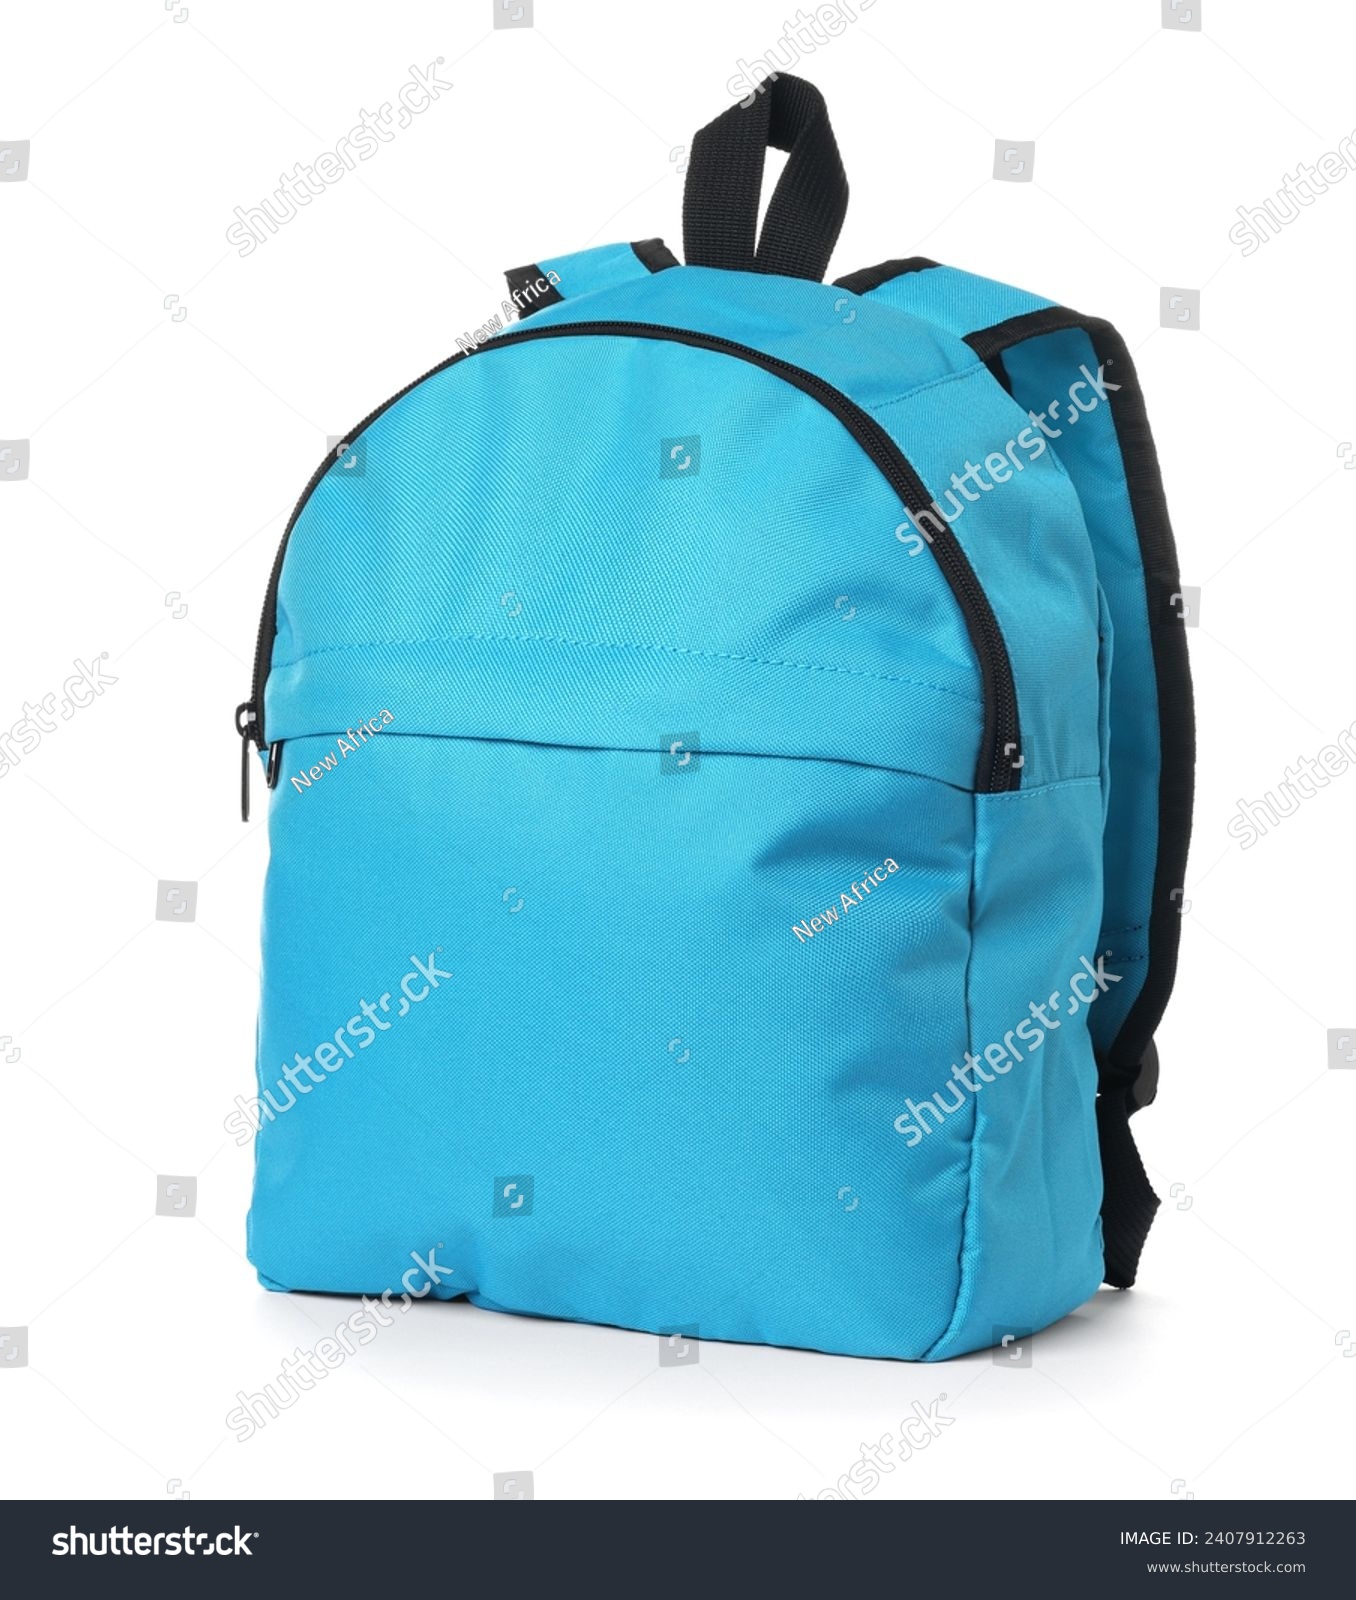 Stylish light blue backpack isolated on white #2407912263